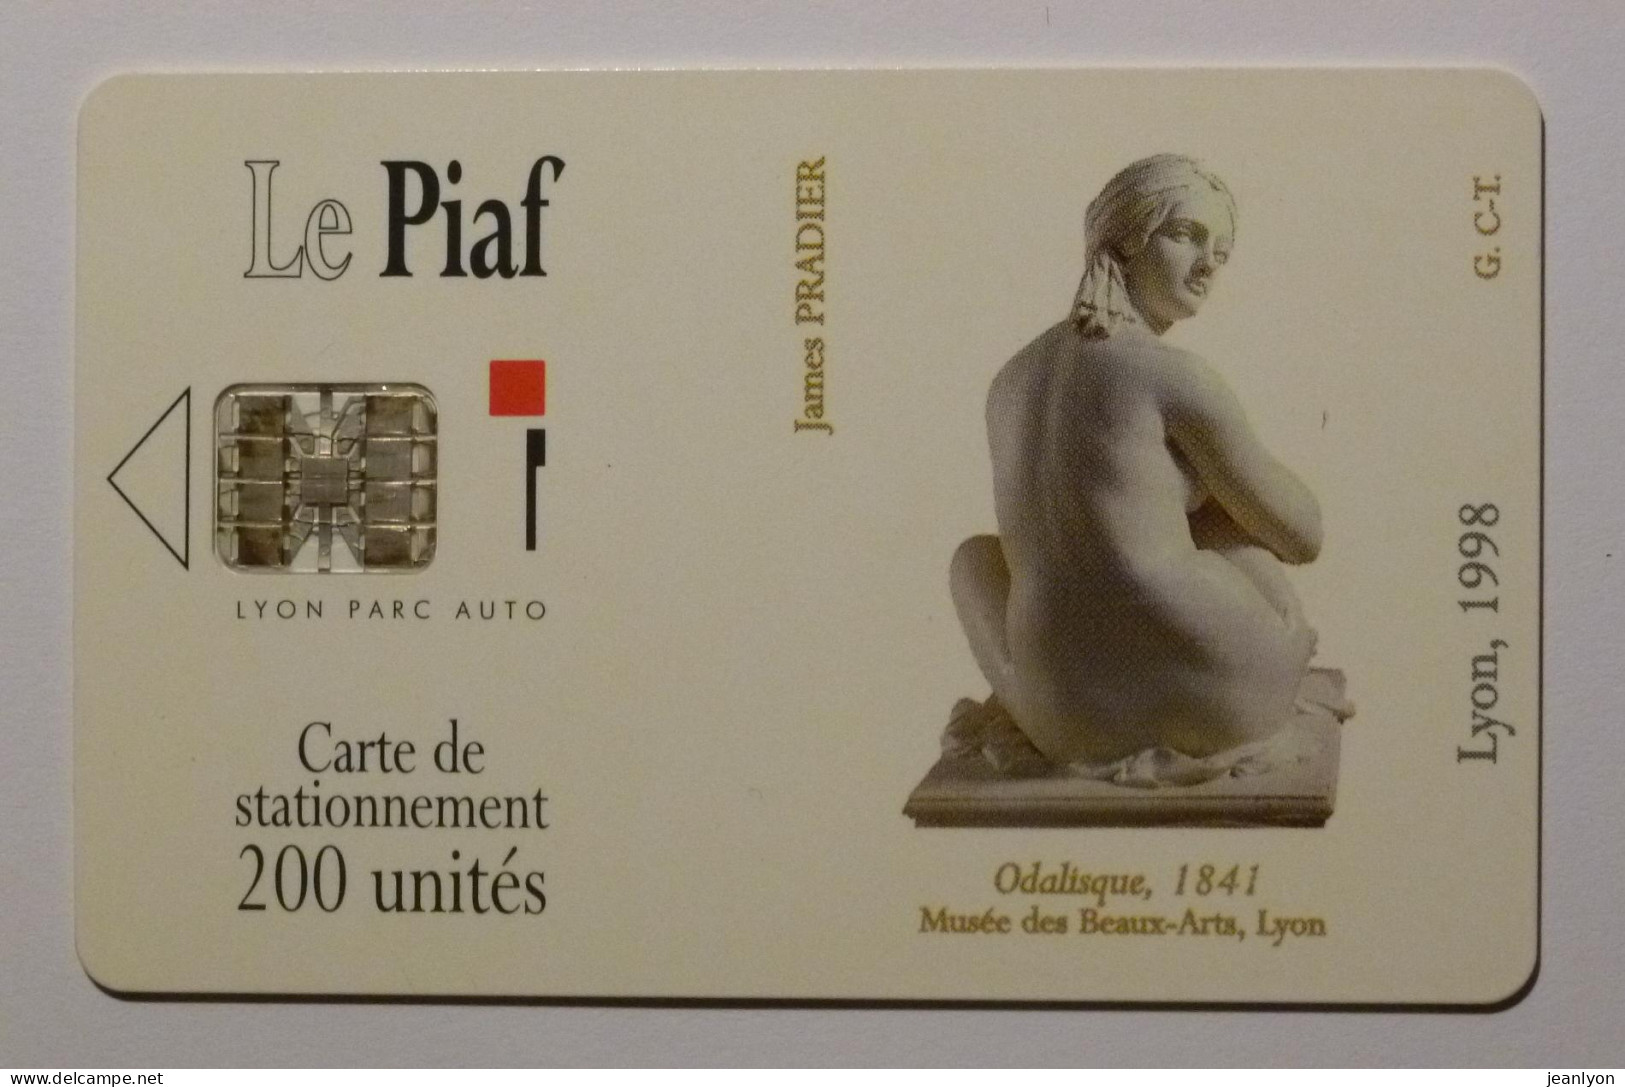 PIAF LYON - Carte Stationnement - Art / Statue - Odalisque - Musée Des Beaux Arts Lyon - Cartes De Stationnement, PIAF